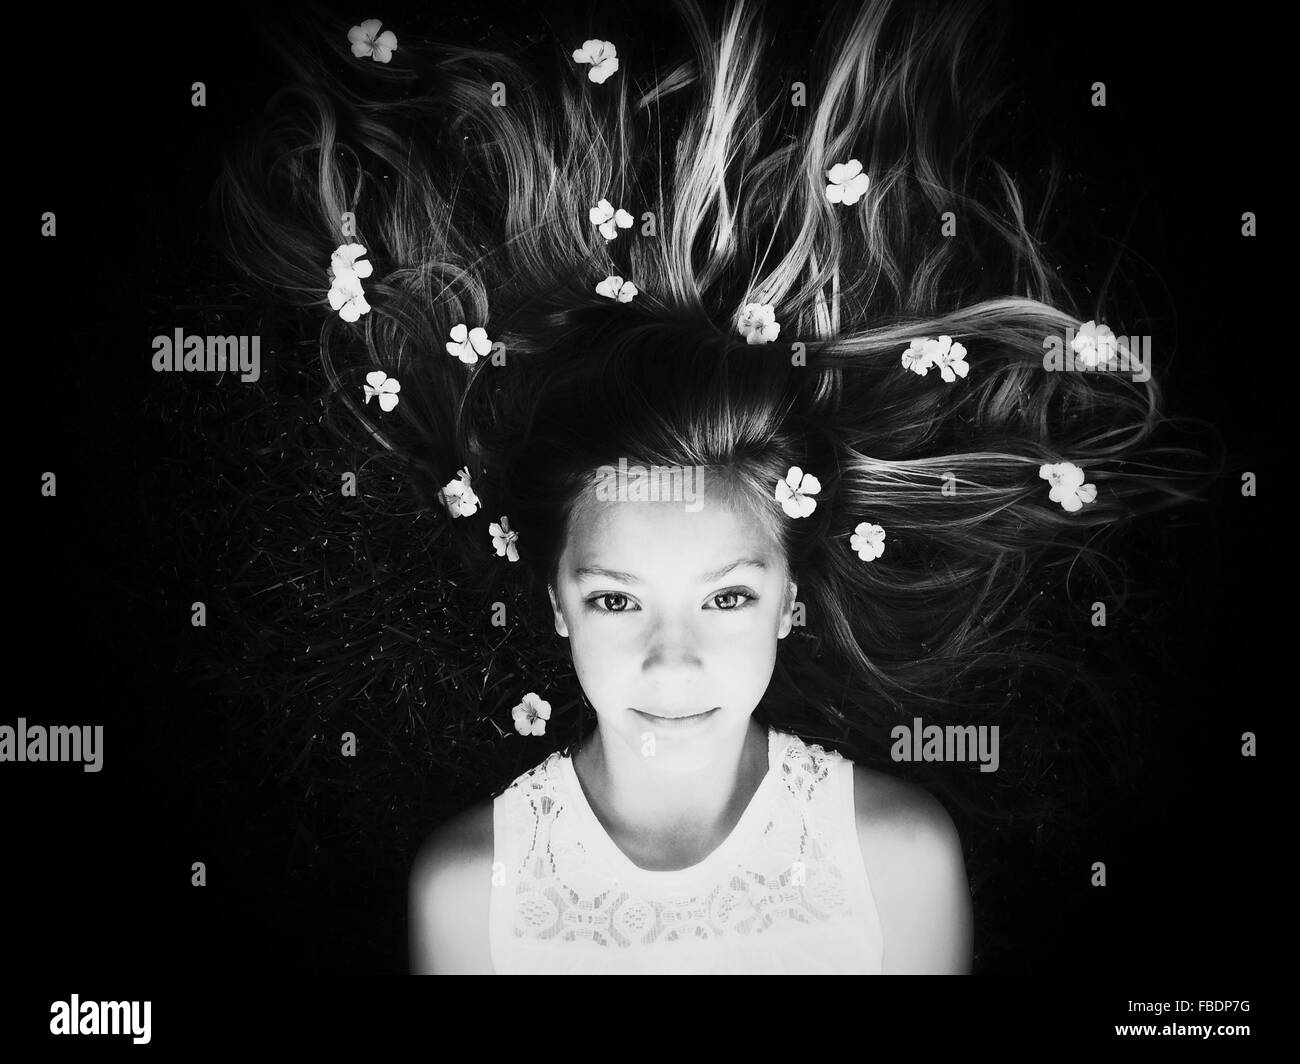 Portrait de jeune fille couchée avec des fleurs dans les cheveux Banque D'Images